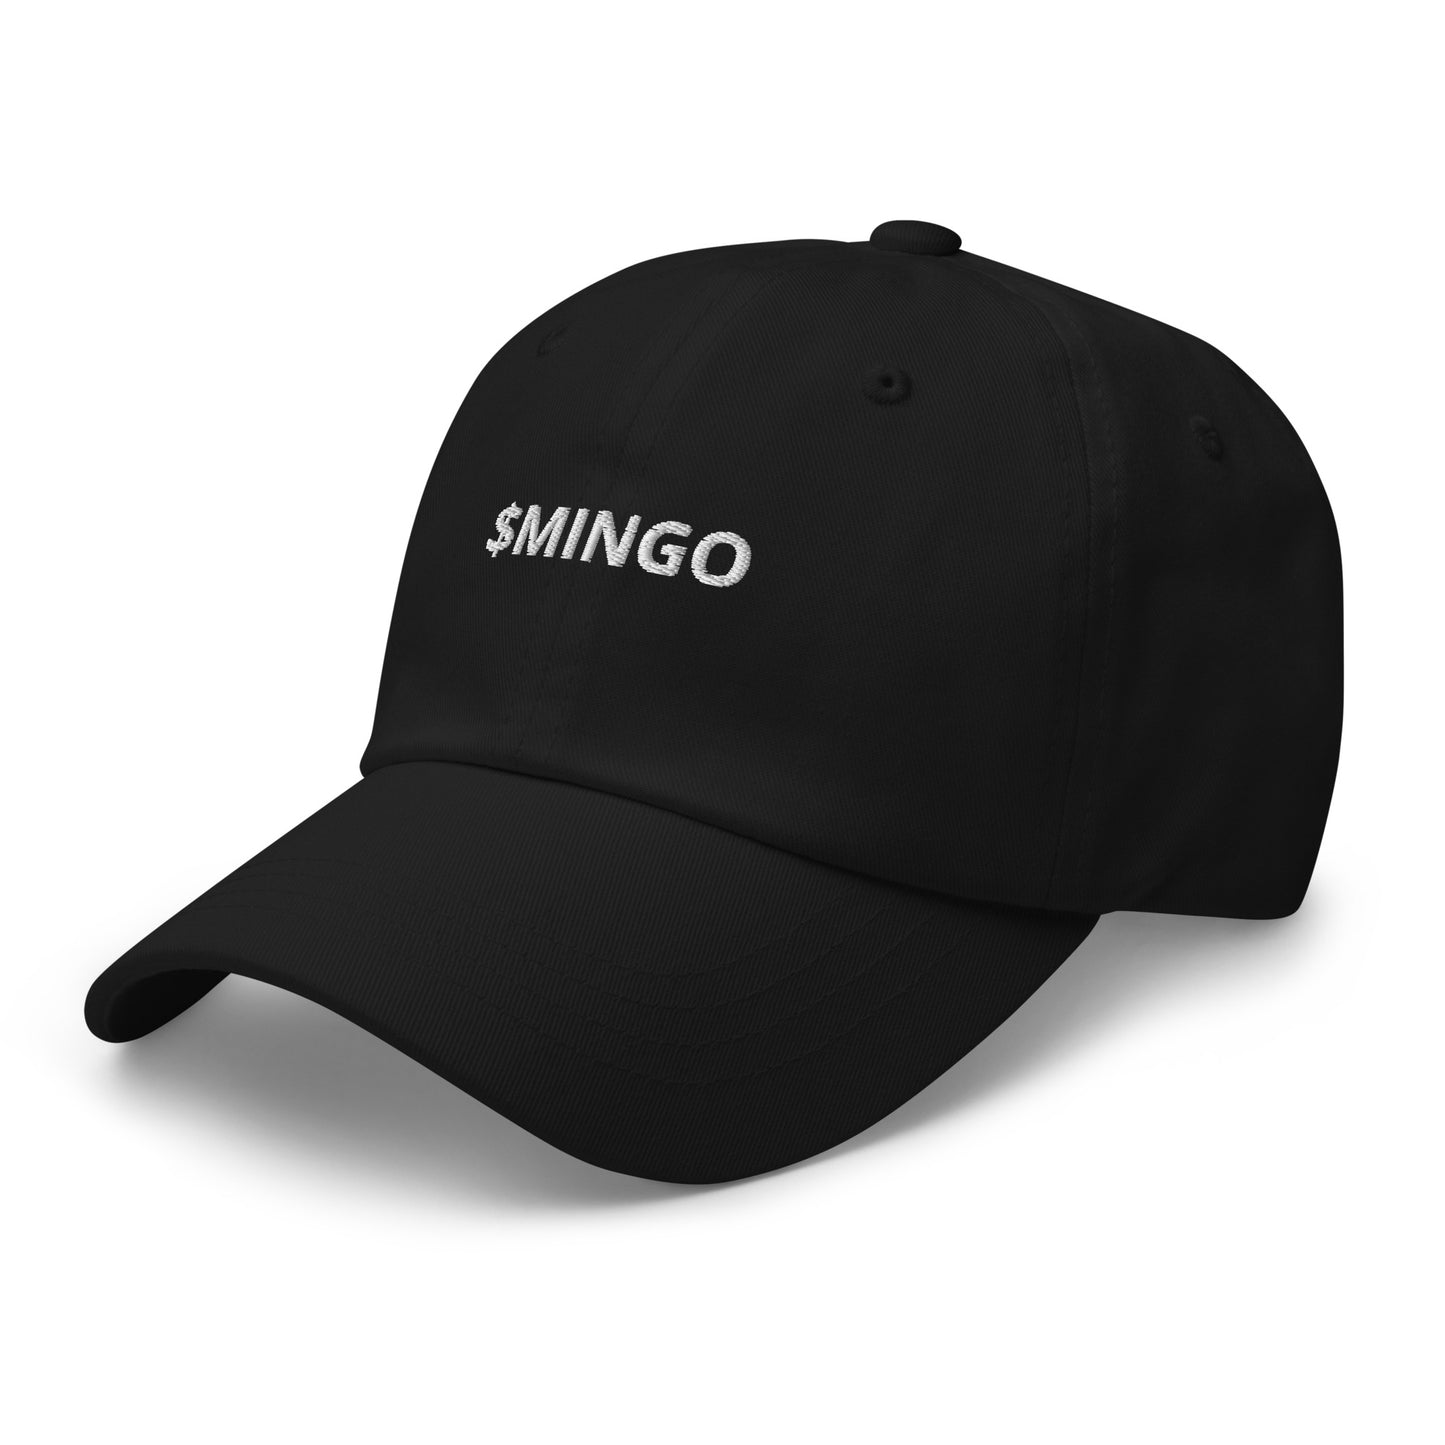 $MINGO Dad hat